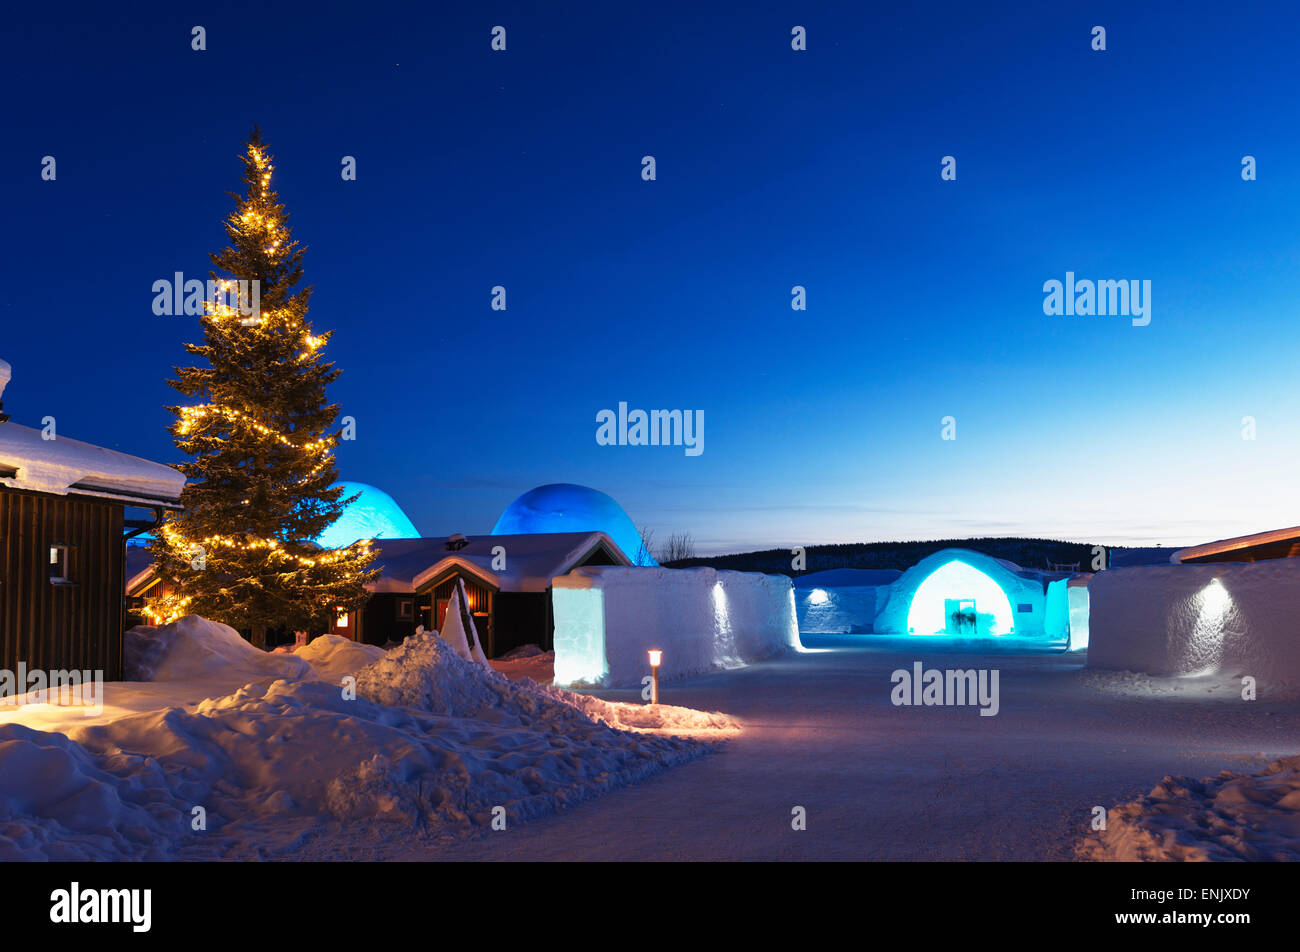 Hôtel de Glace, Kiruna, Lapland, Cercle arctique, en Suède, Scandinavie, Europe Banque D'Images